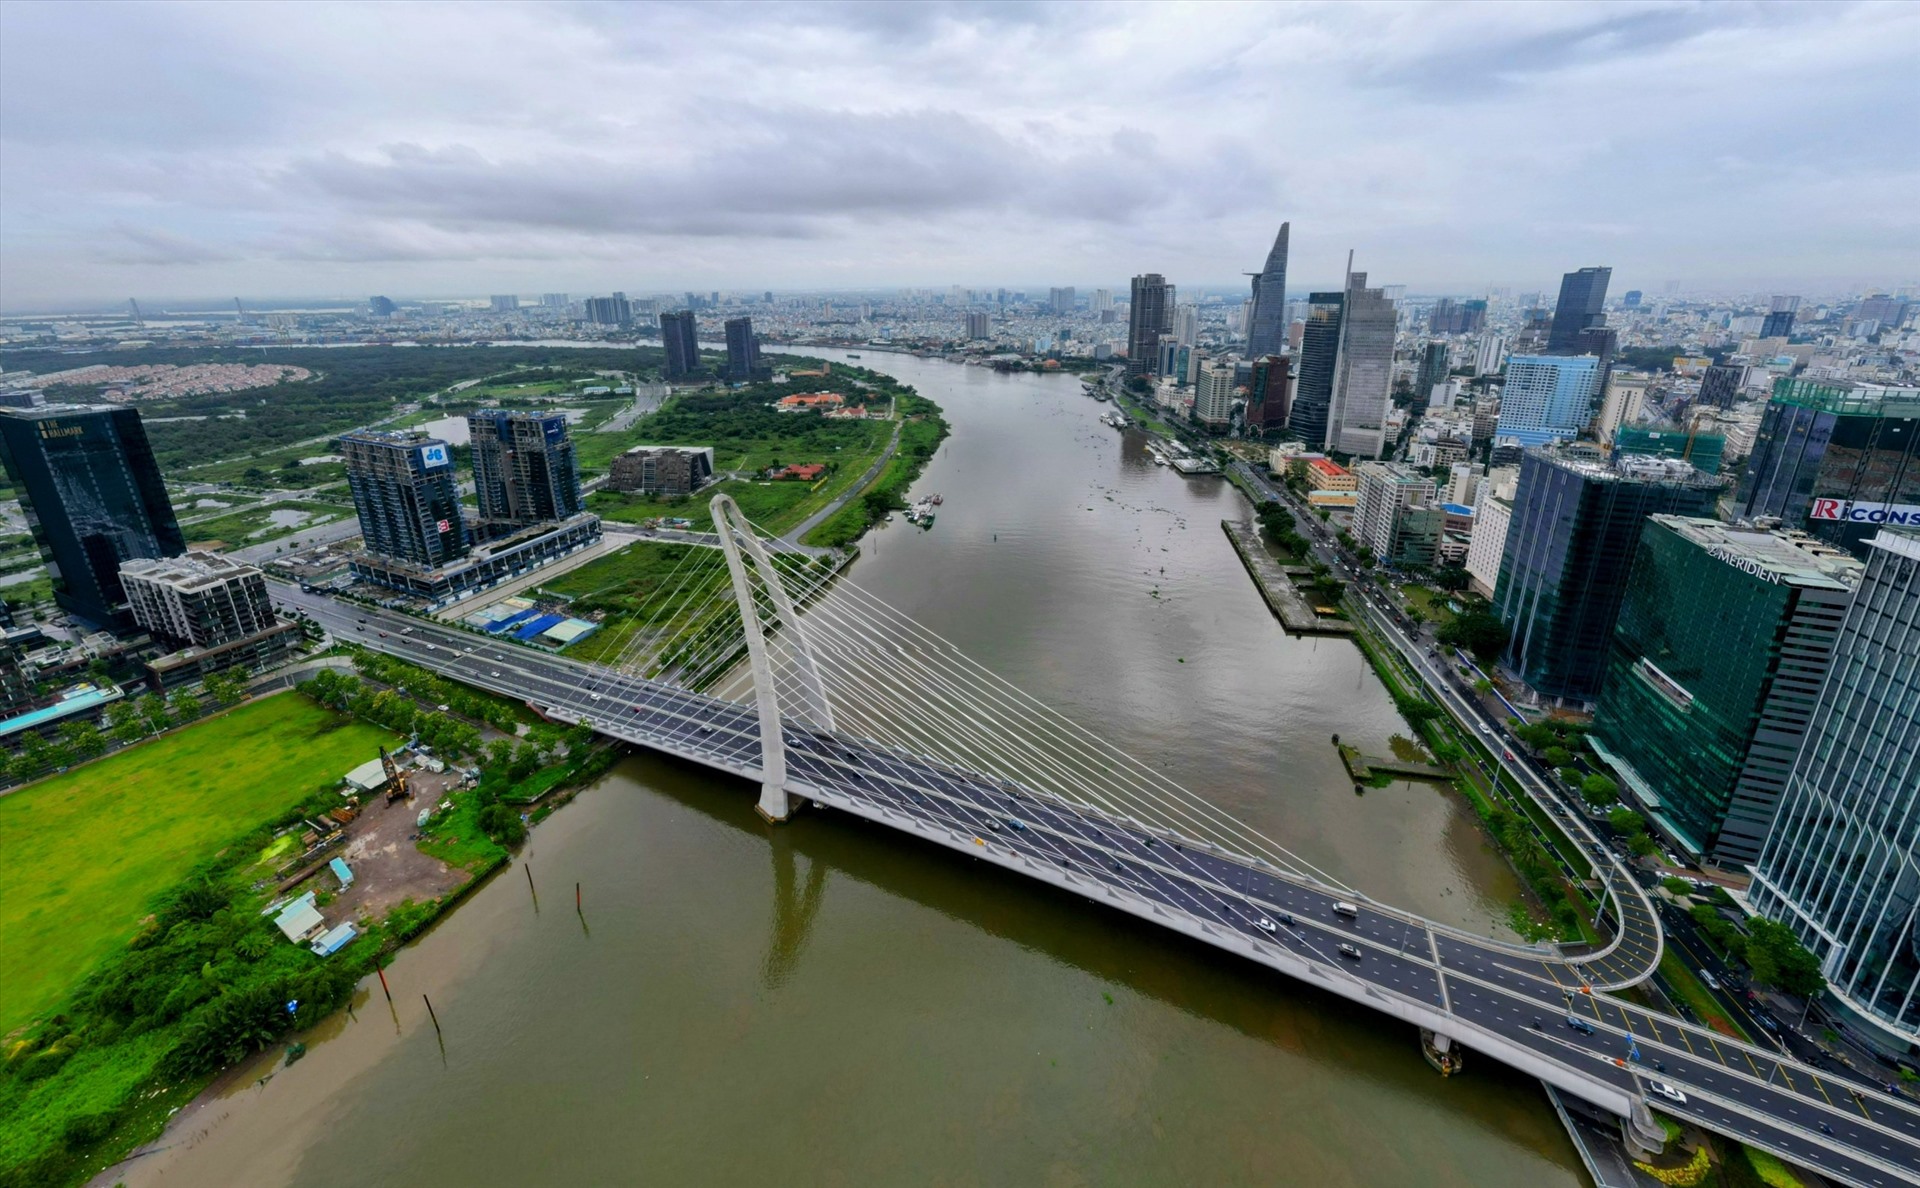 Dọc sông Sài Gòn sẽ được quy hoạch để phát triển đô thị và làm đường ven sông.  Ảnh: Anh Tú